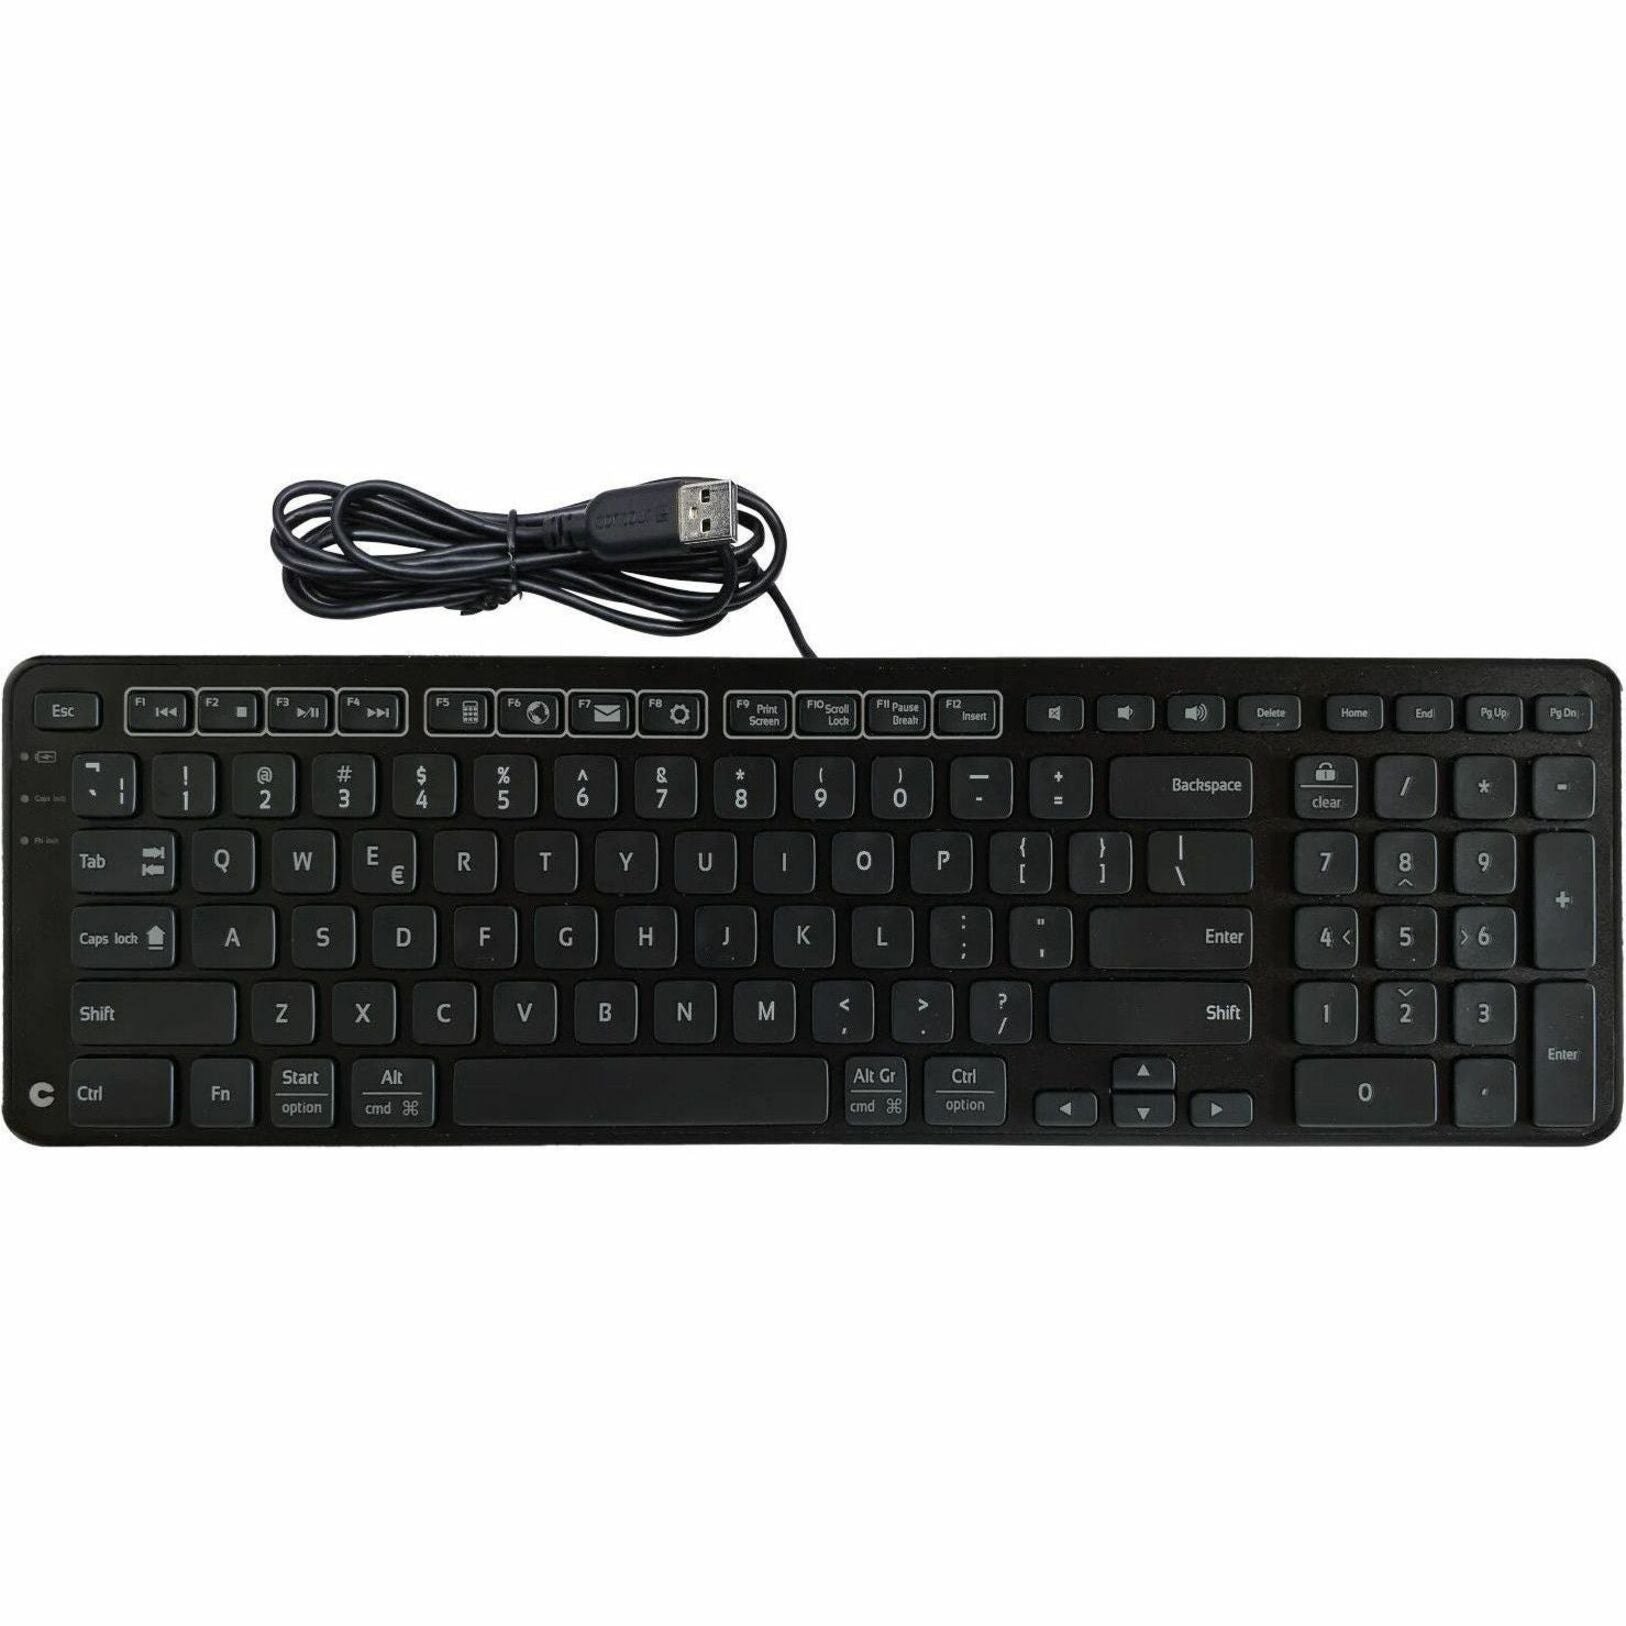 Contour 102104 Balance Keyboard, Wireless Ergonomic Full-size Compact Plug & Play